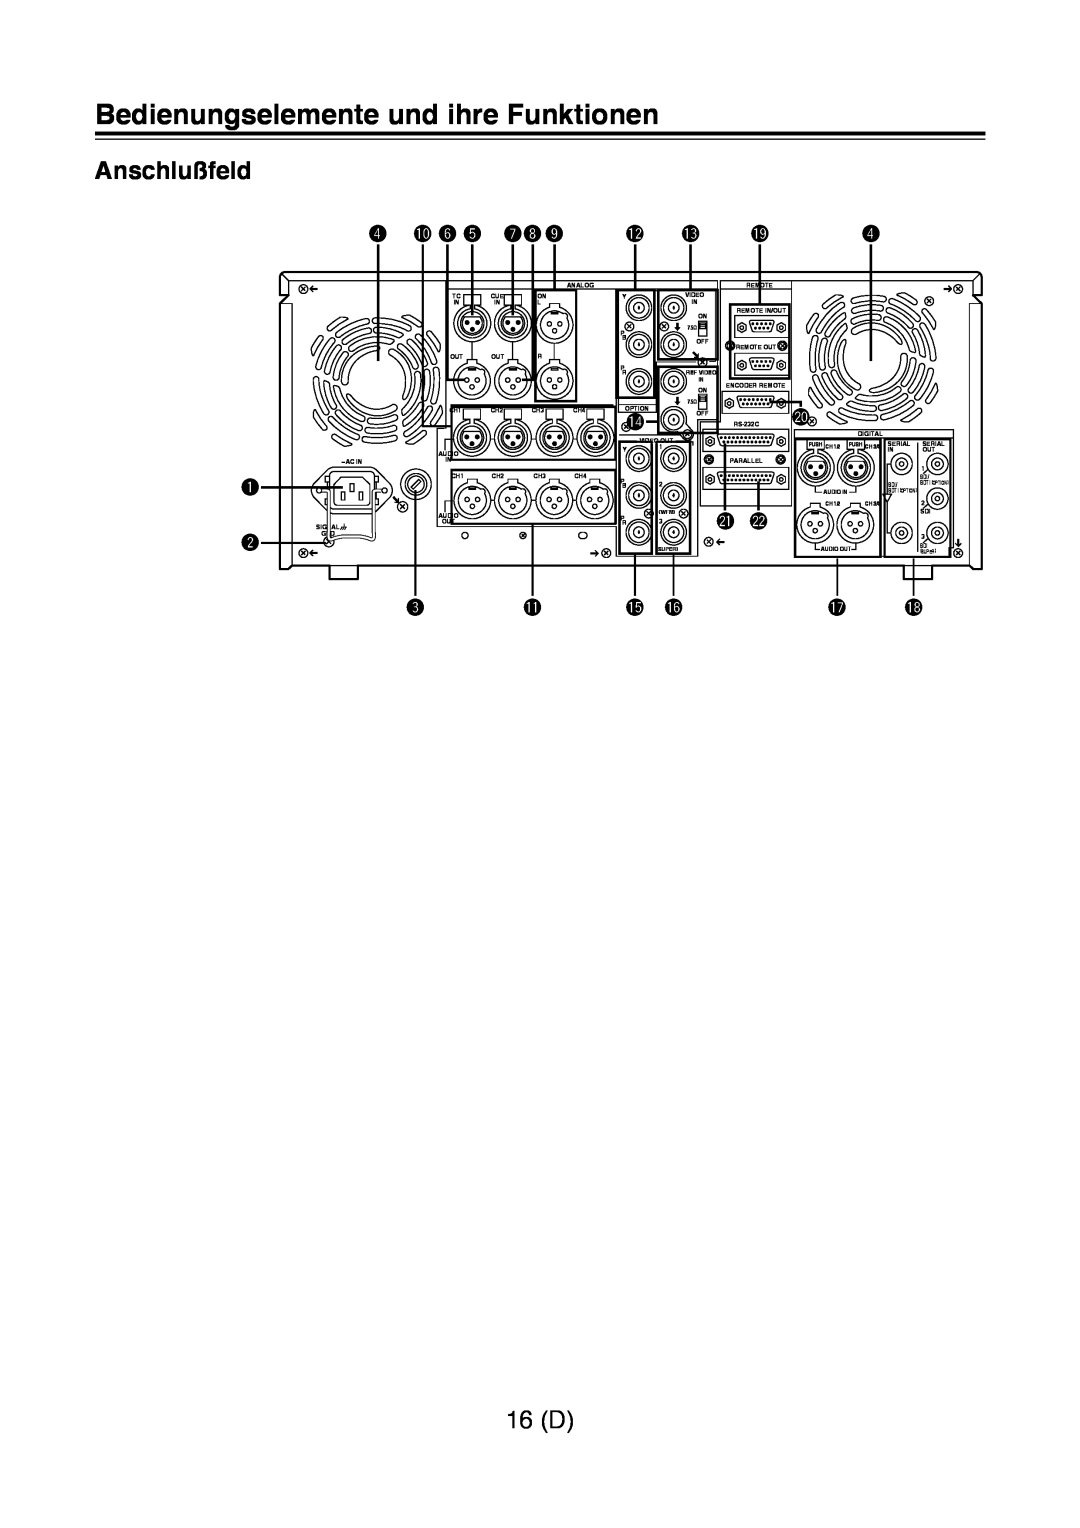 Panasonic AJ-D960 operating instructions Anschlußfeld, 16 D, Bedienungselemente und ihre Funktionen 